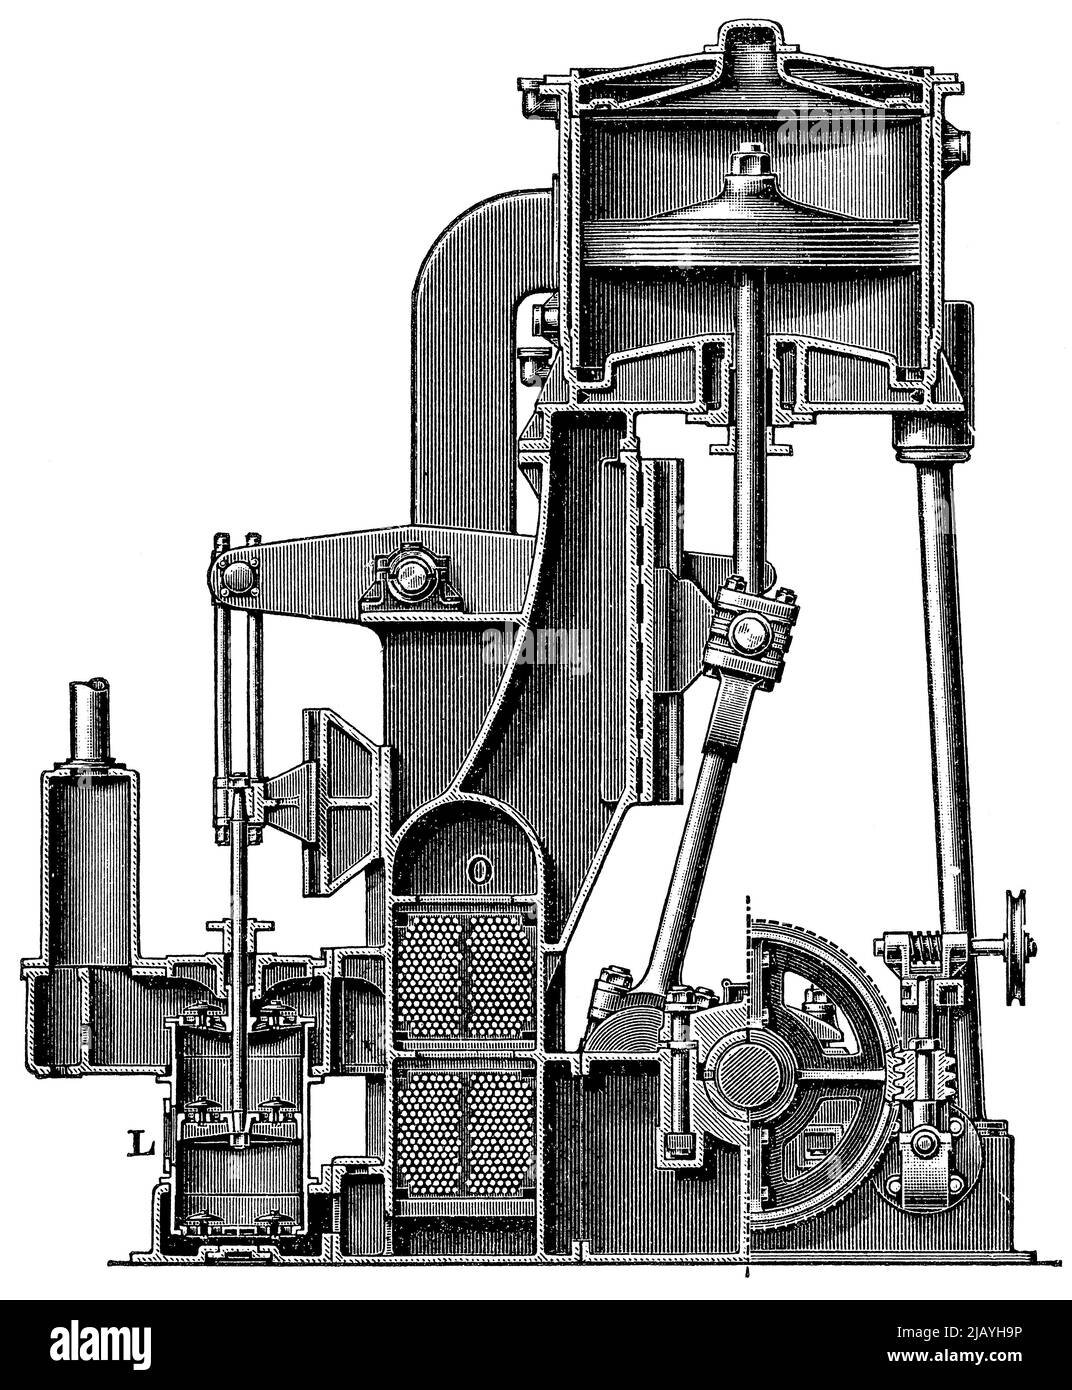 Liegende Dreifach-Expansions-Dampfmaschine mit Elsner Steuerung